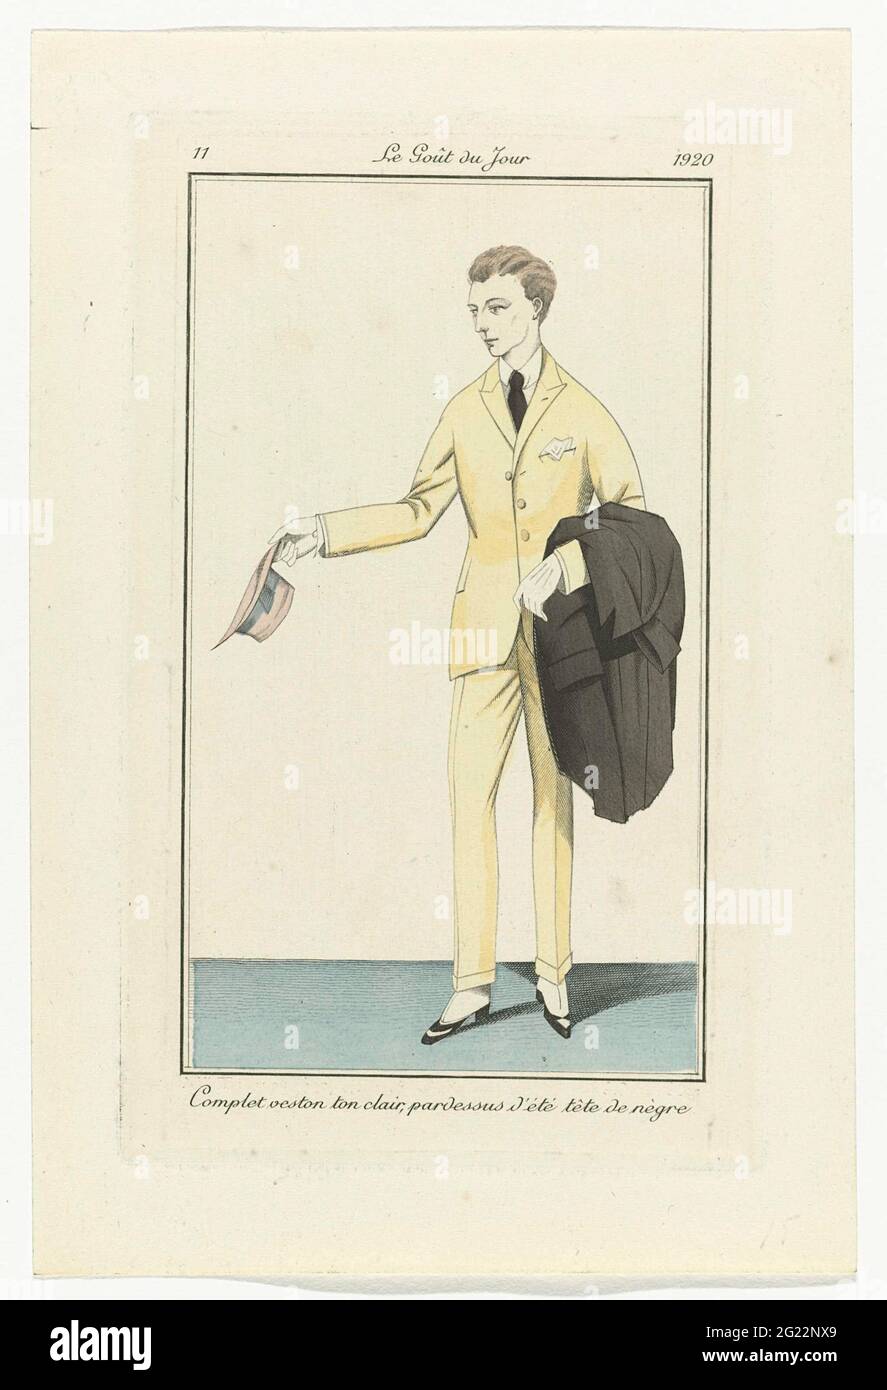 Le Goût du jour, 1920, no 11: Complet Veston ton clair (...). Homme en  costume avec veste et pantalon long de couleur claire. Au bras un pardessus  noir-brun (pardessus) pour l'été. Imprimé